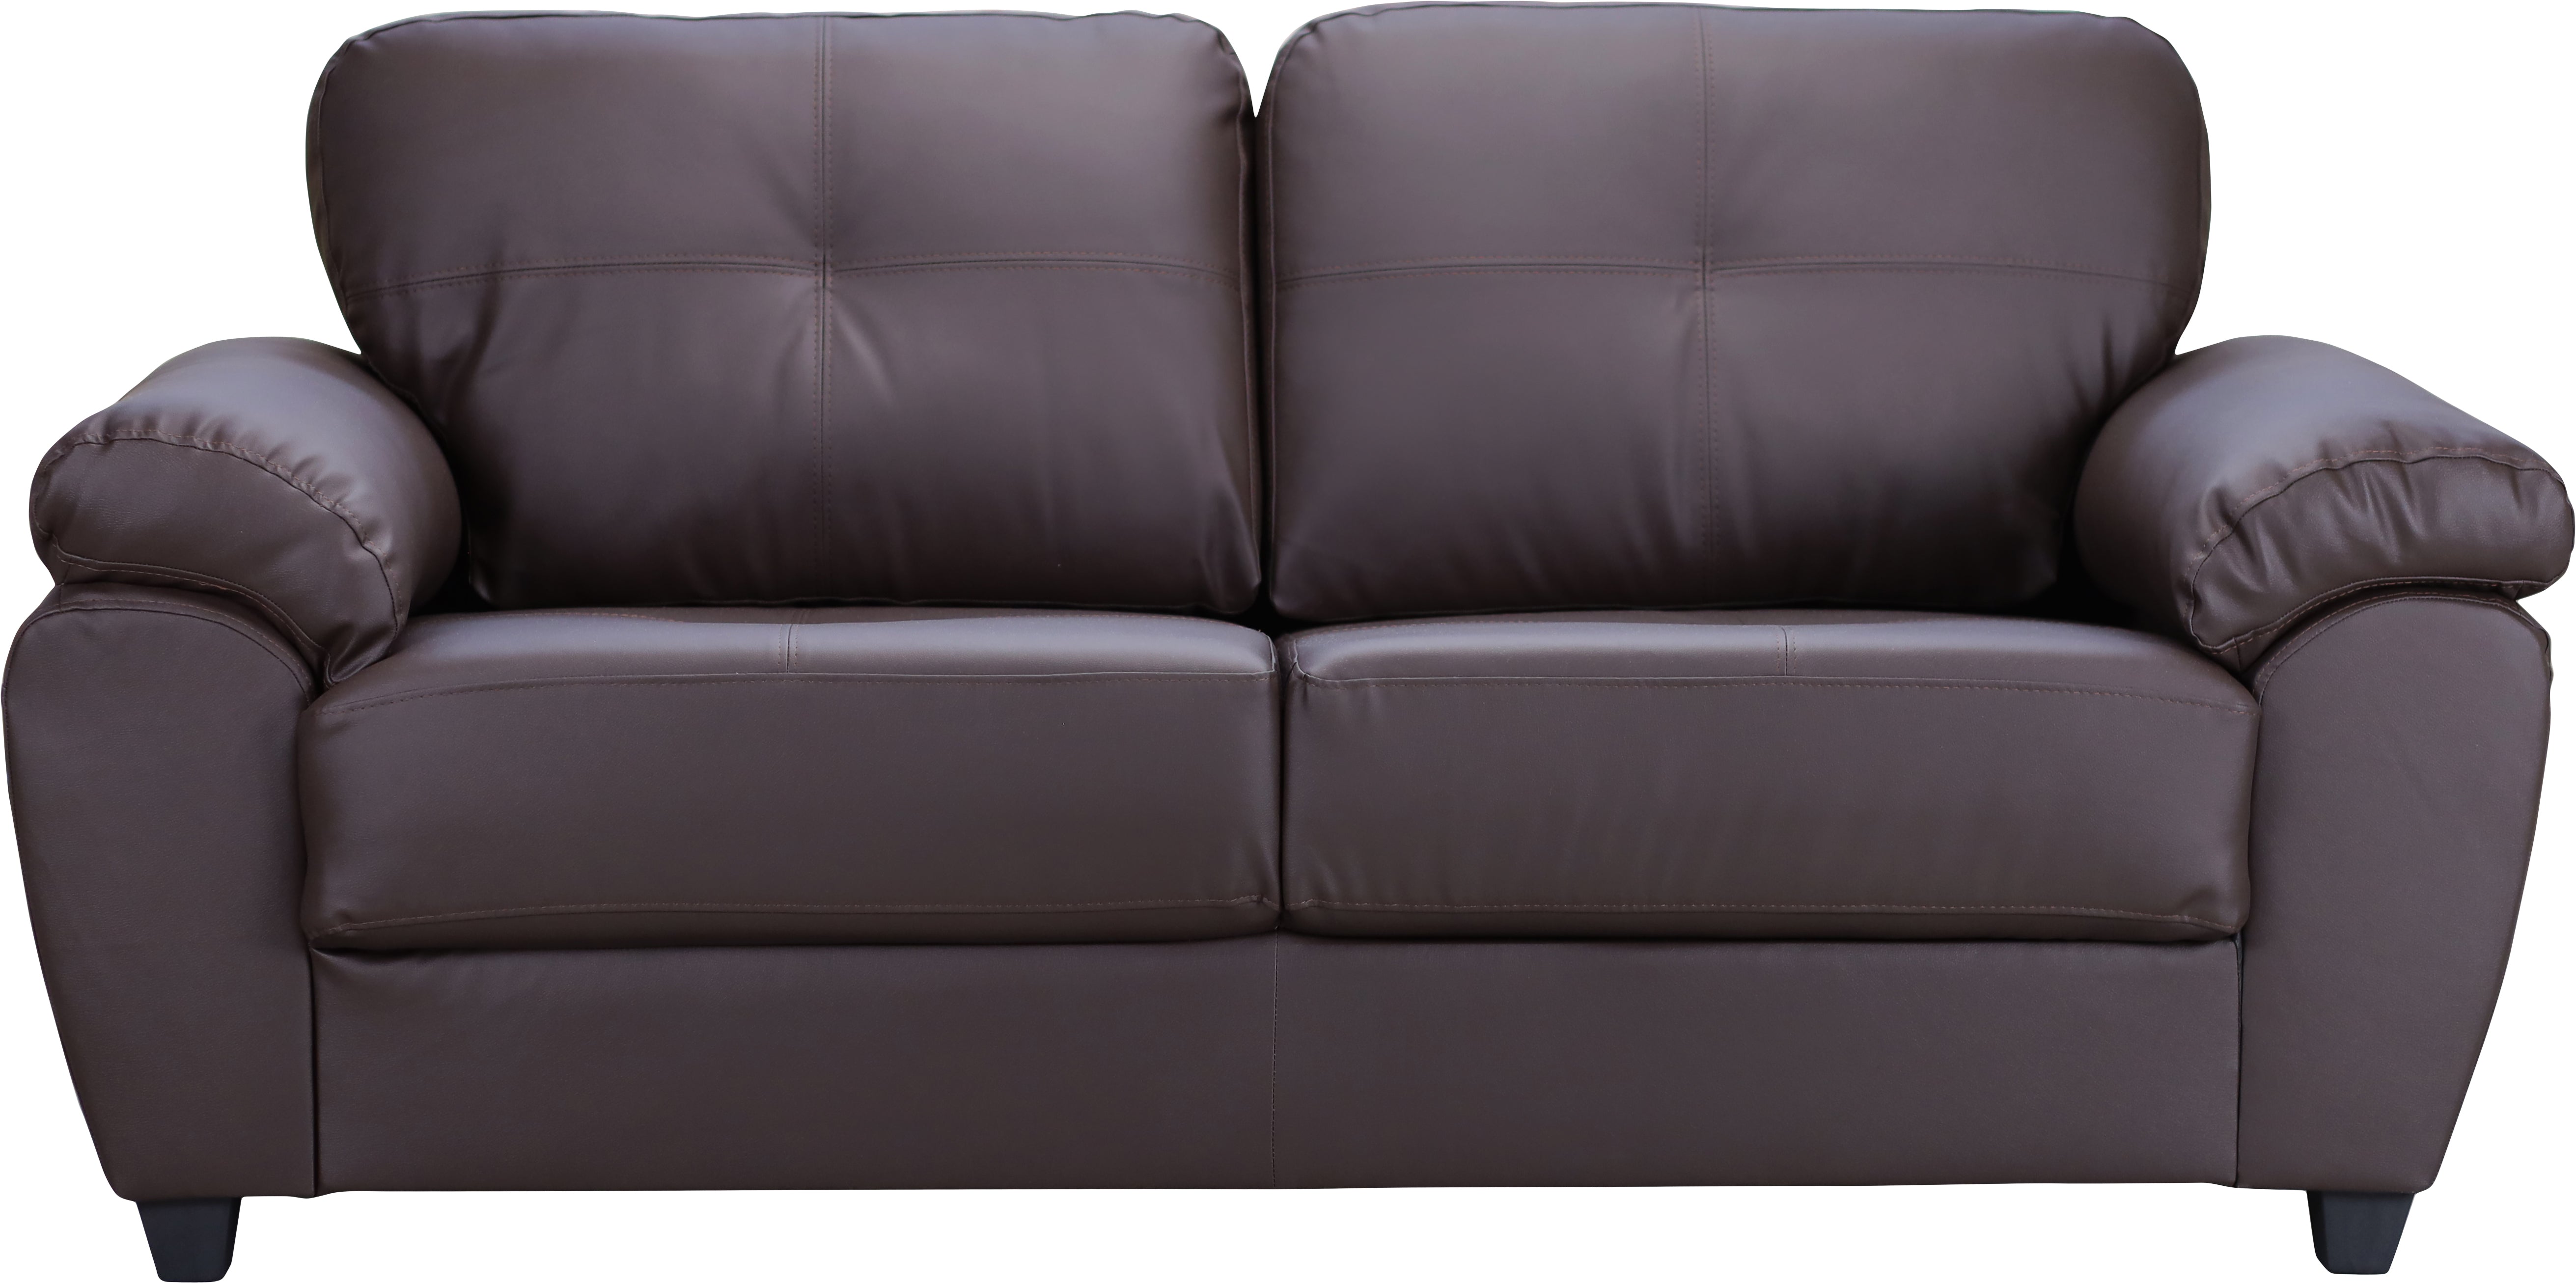 2 seater sofa - Capri